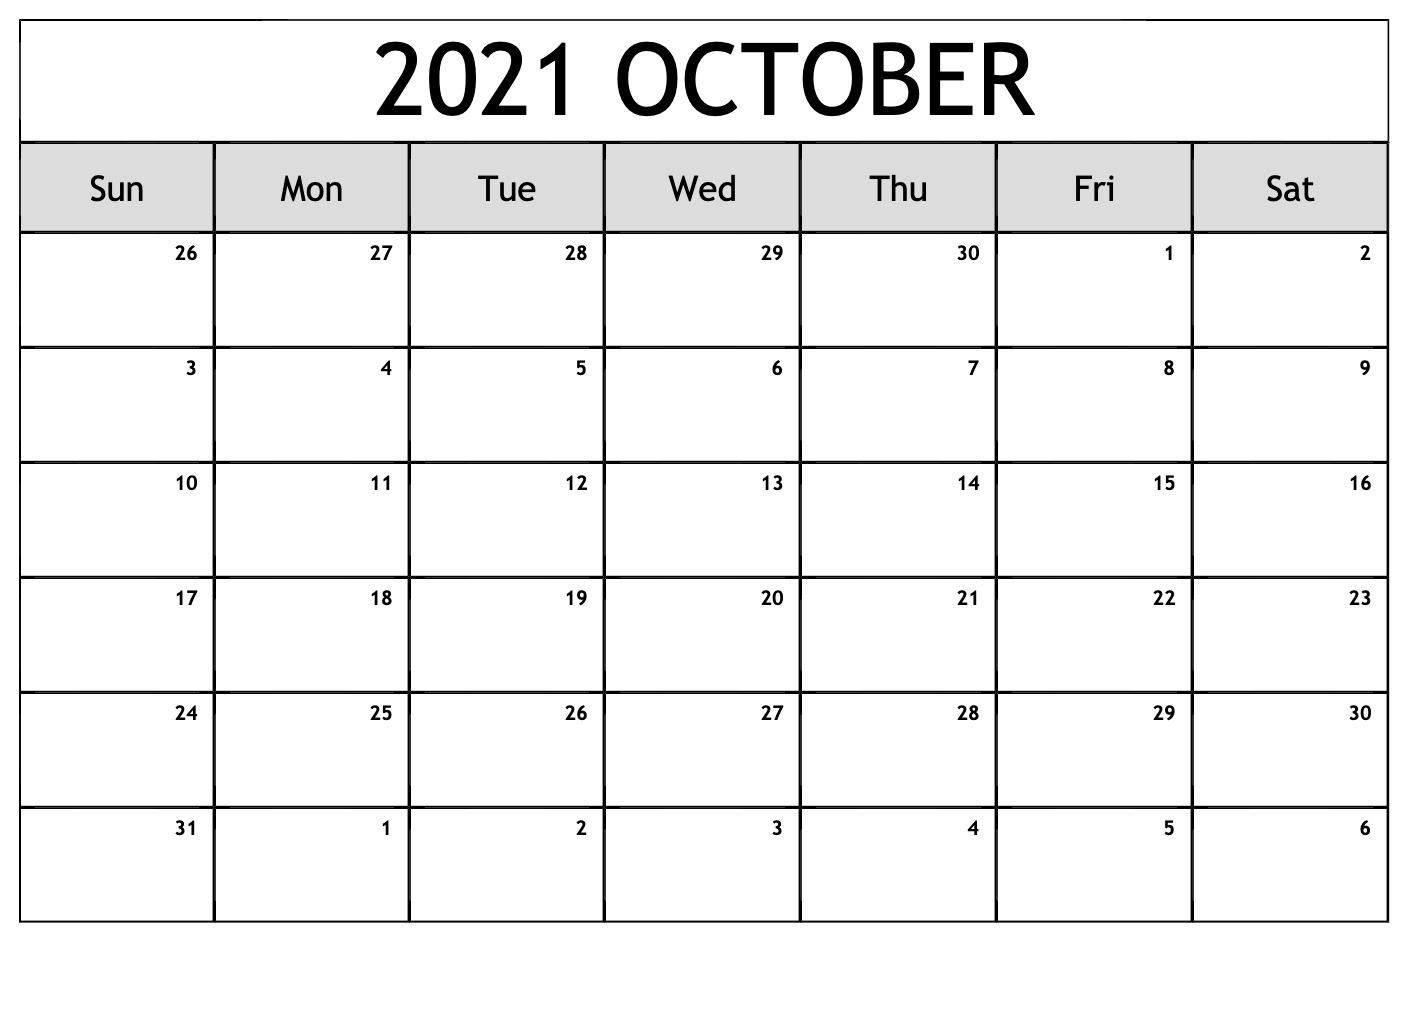 October 2021 Calendar With Bank Holidays